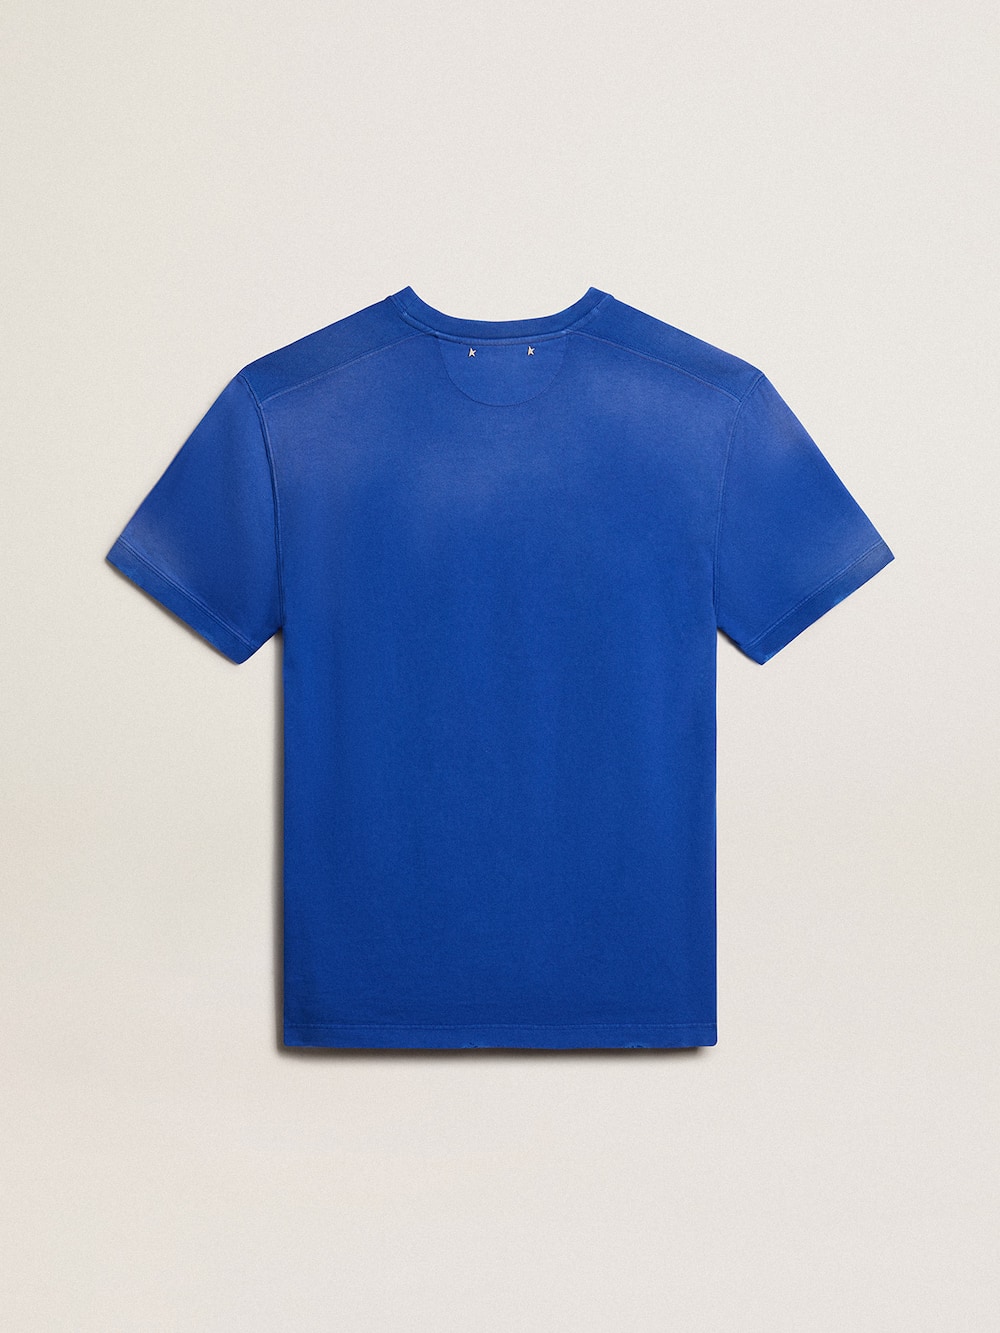 Golden Goose - Blaues Baumwoll-T-Shirt mit Marathon-Sujet auf der Vorderseite in 